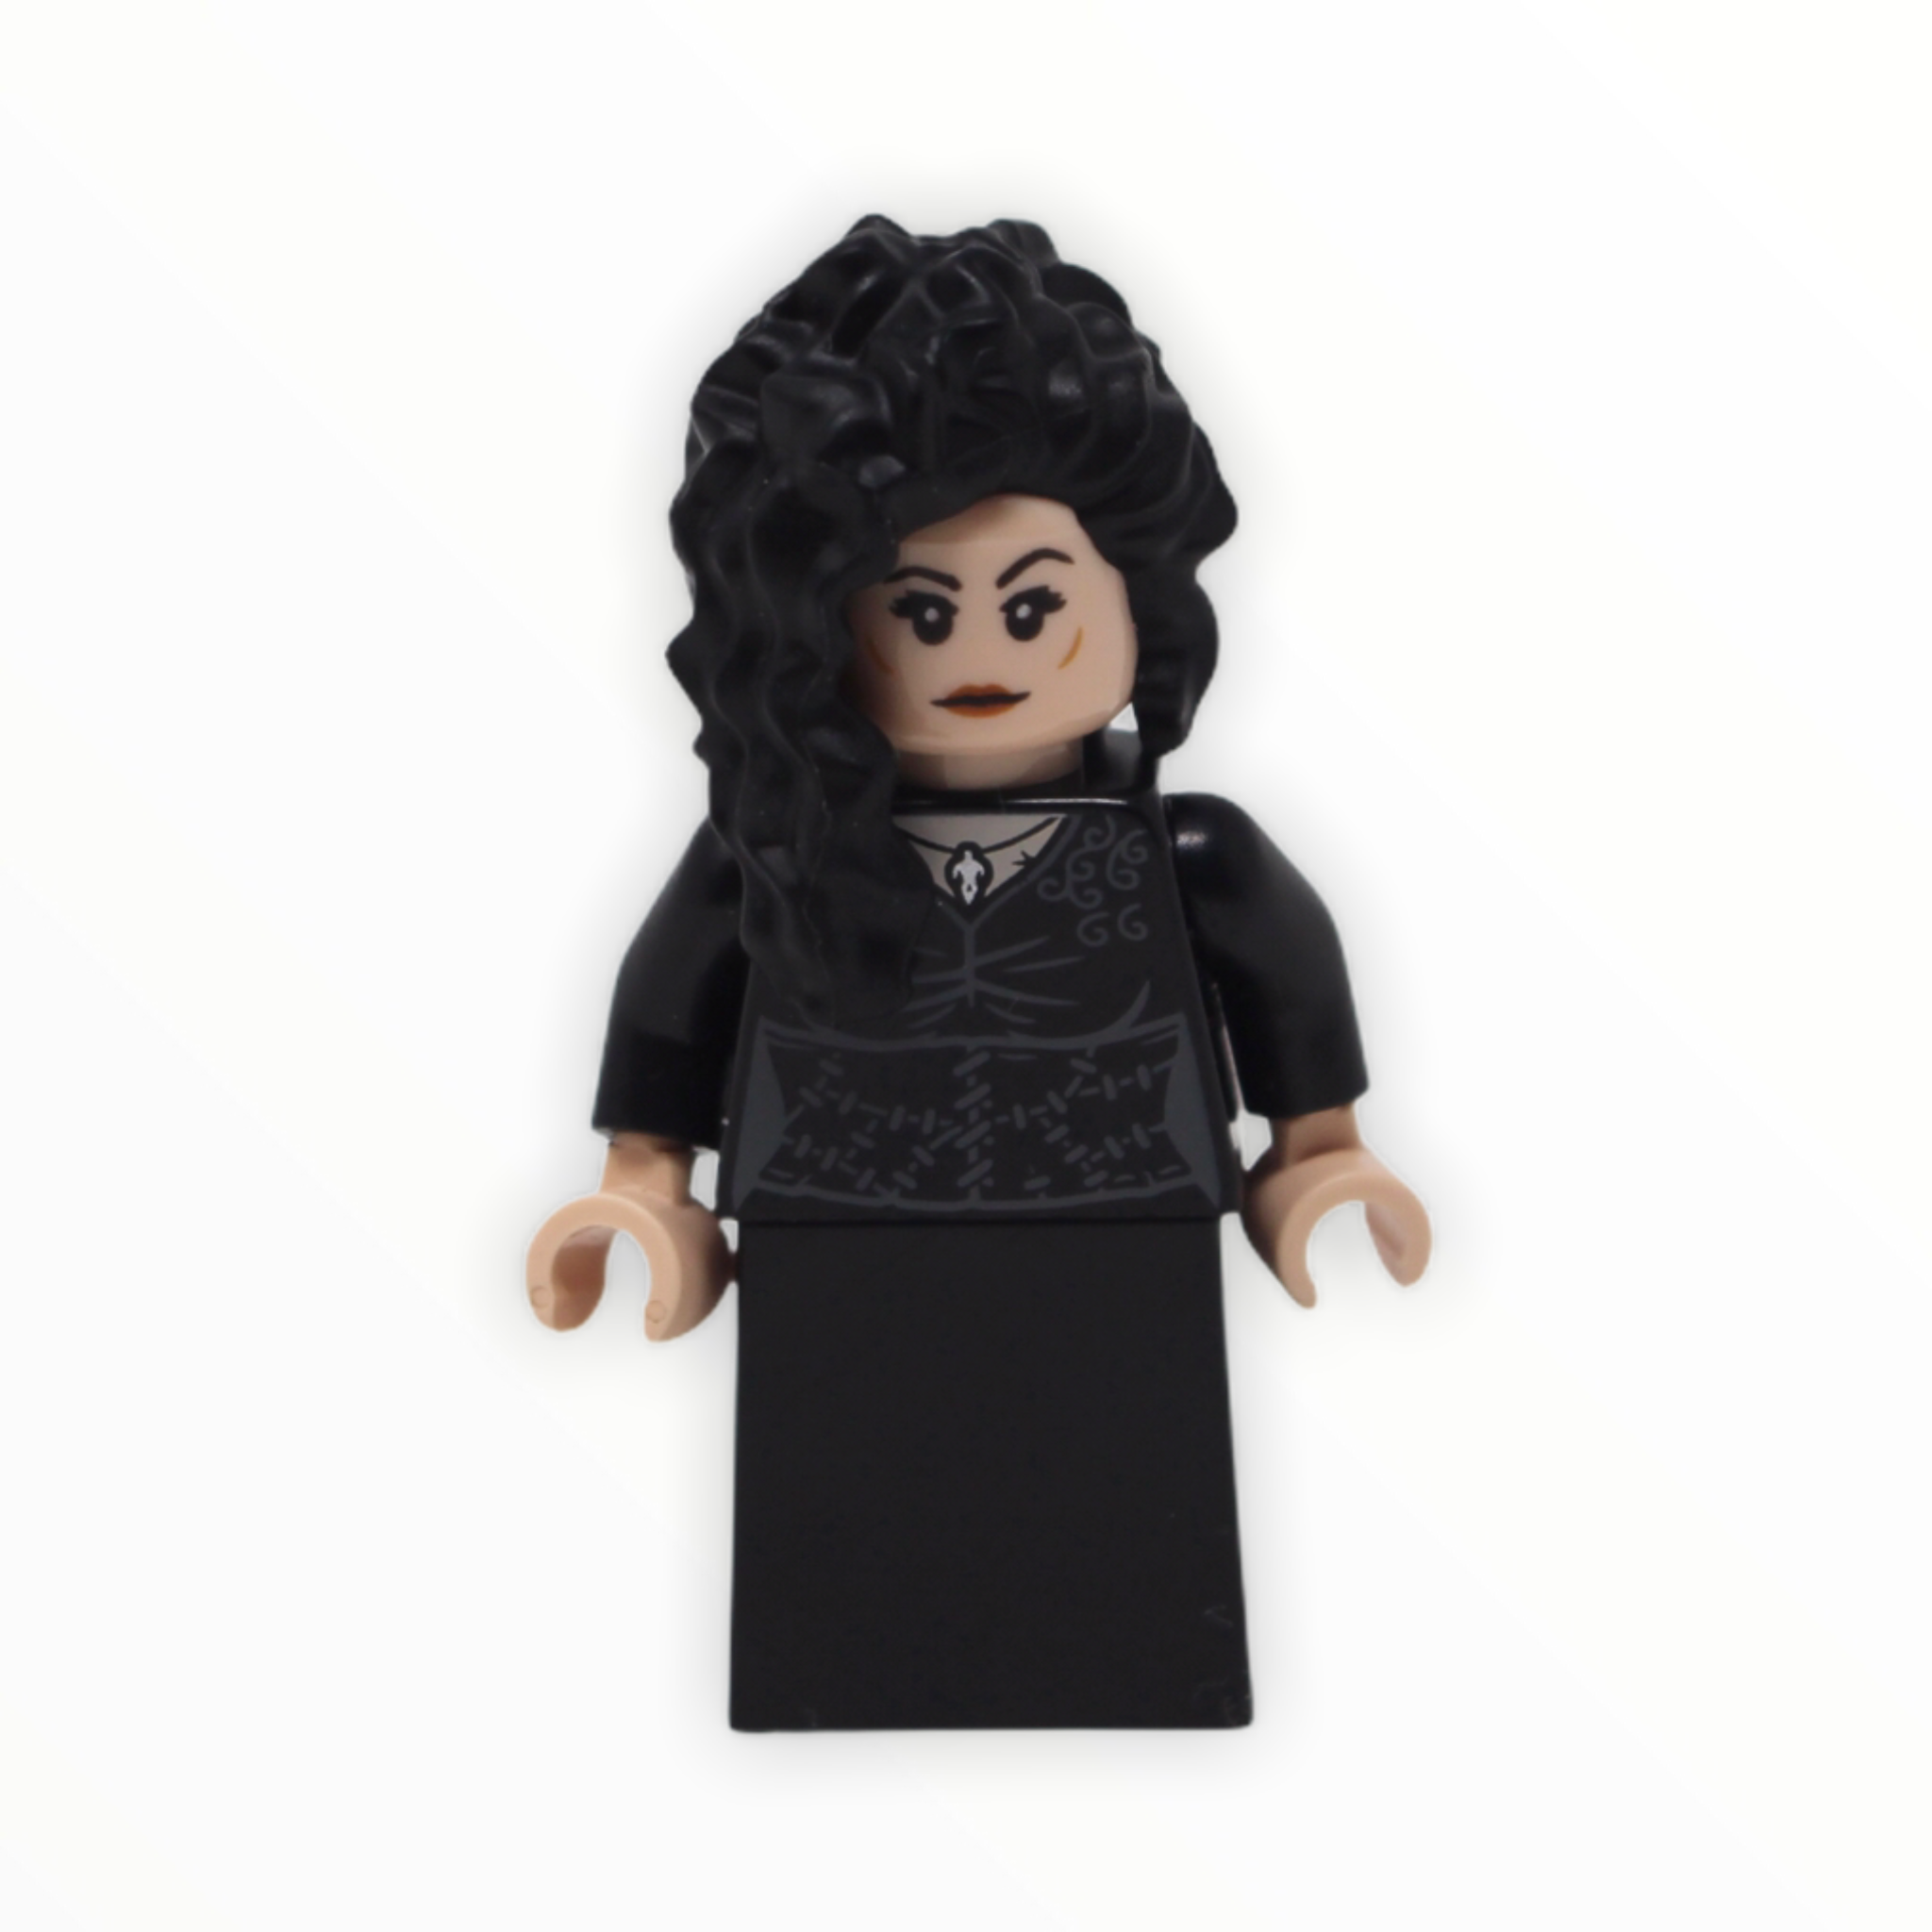 Bellatrix Lestrange (black dress, 2020)